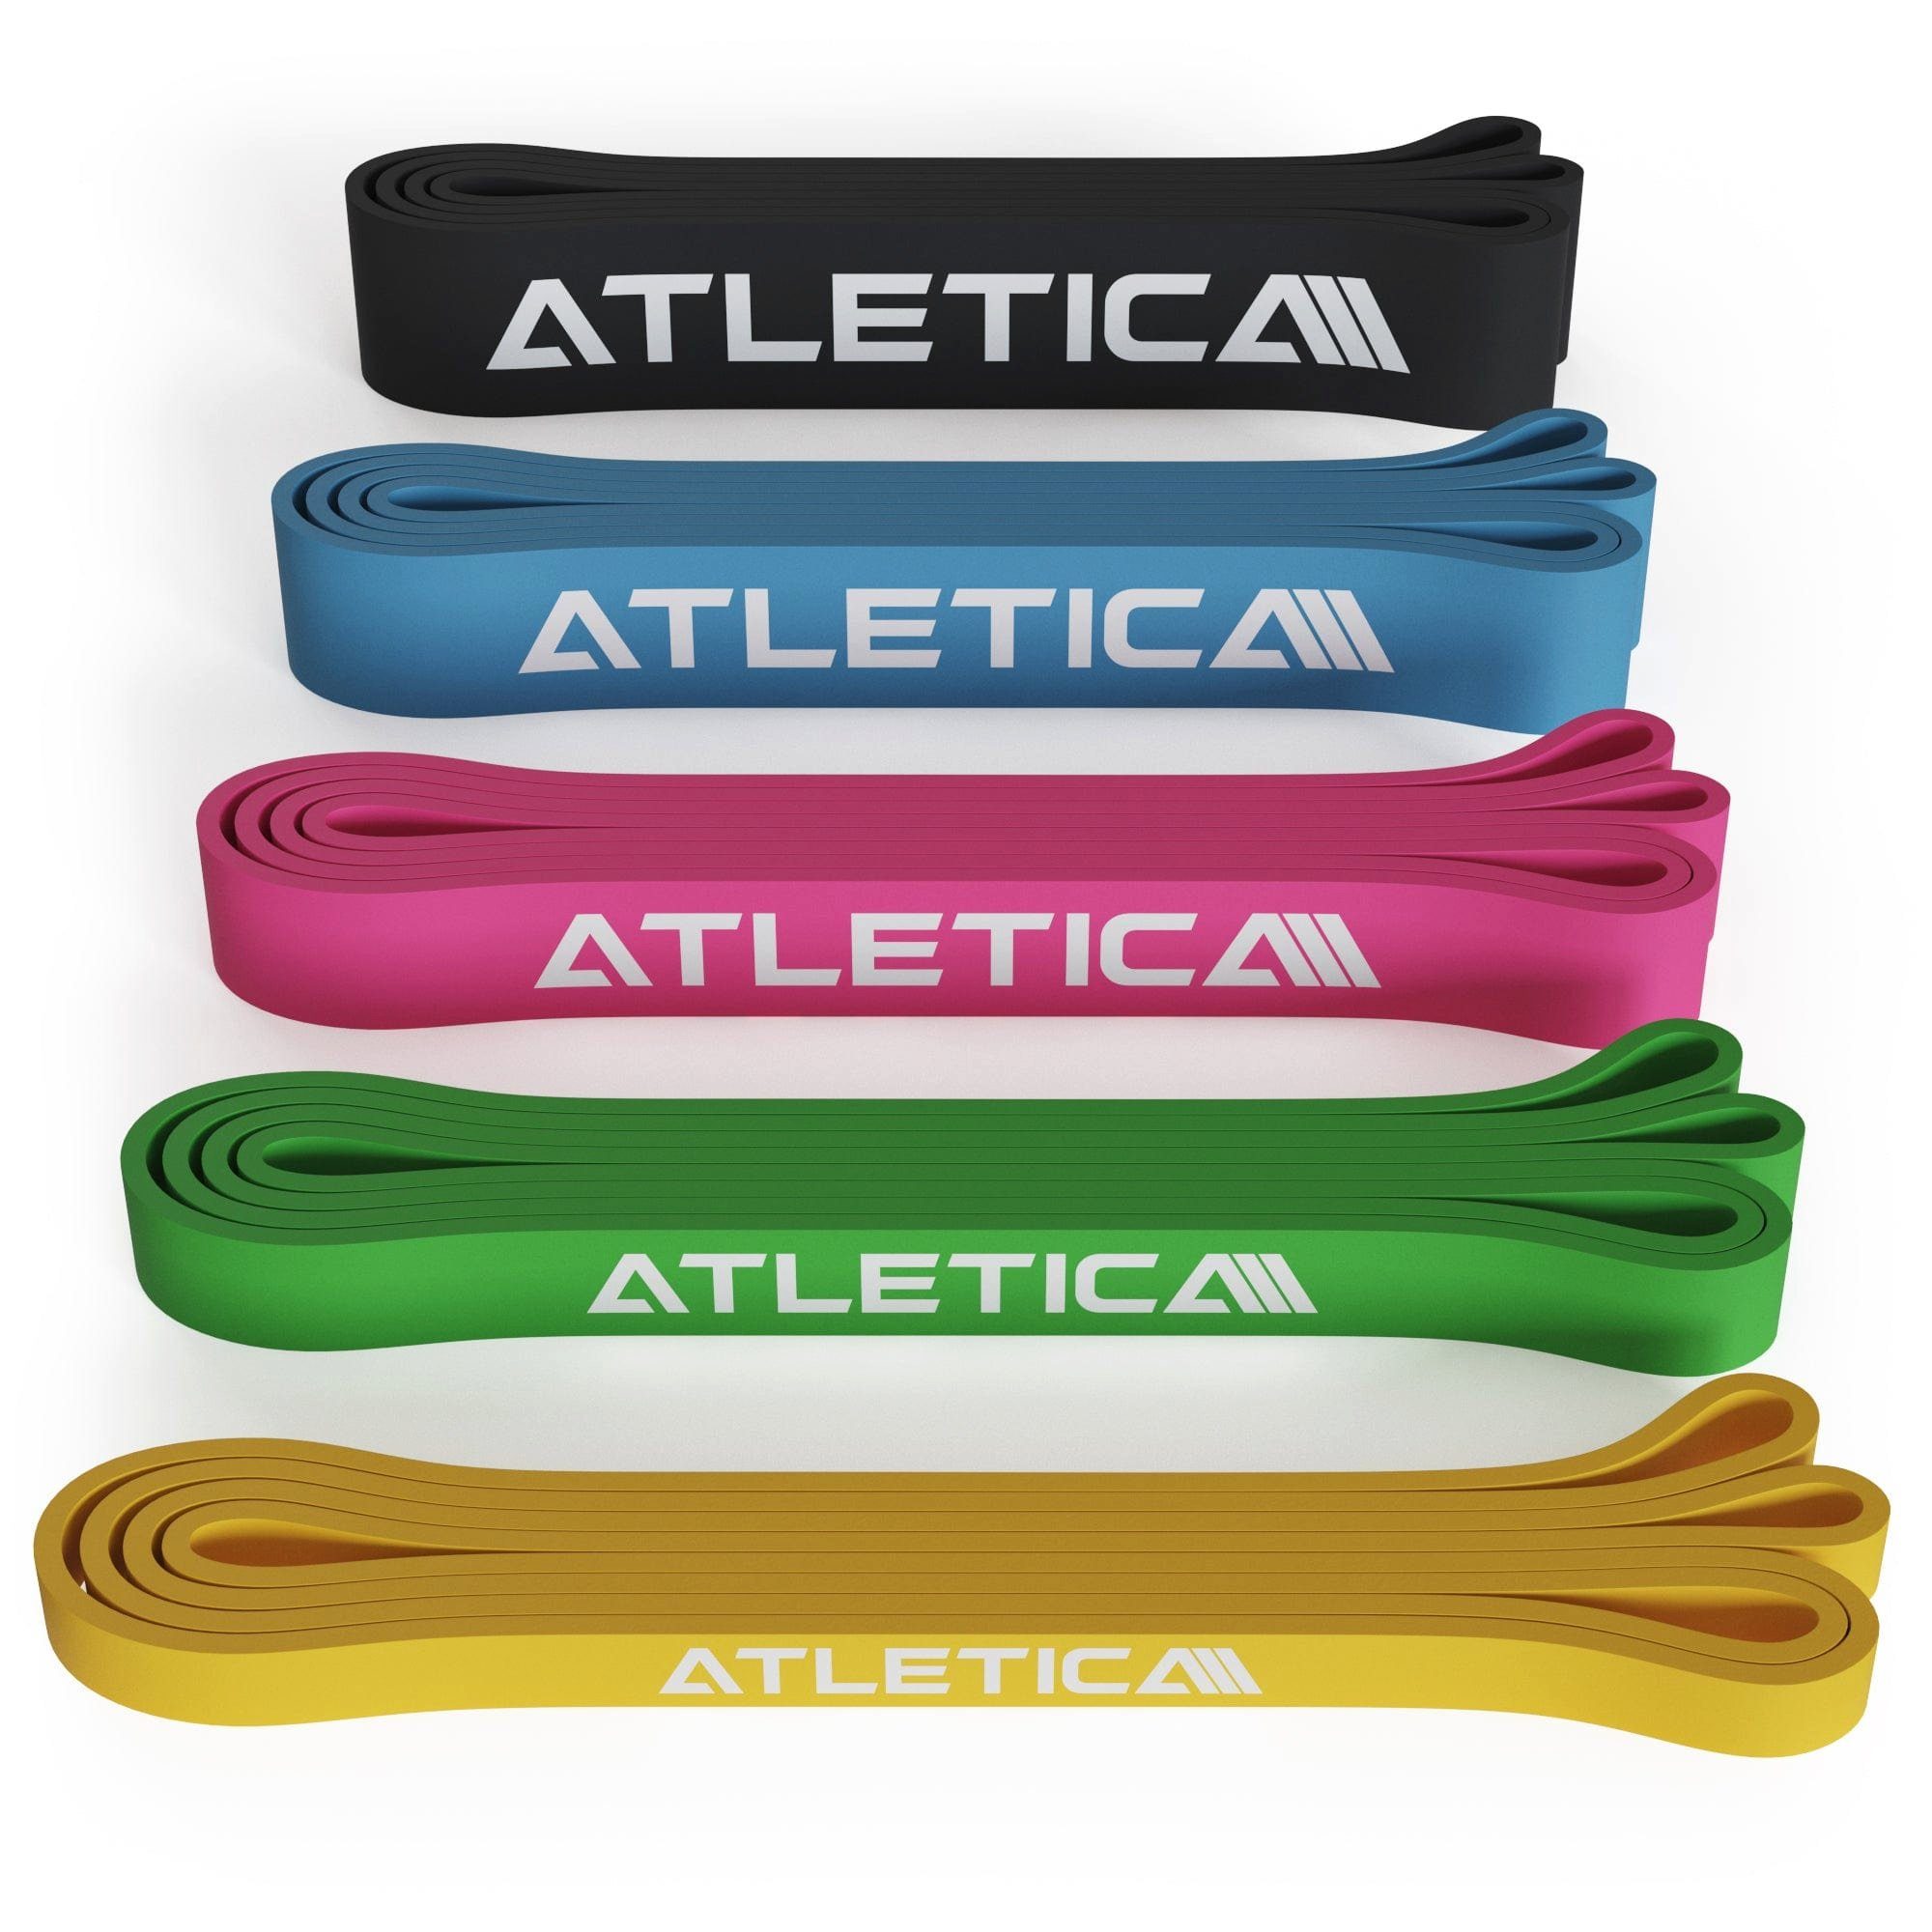 ATLETICA Resistance Bands, Volles Set Volles Set, Alle 5 Stärken, 100% Latex Fitnessband